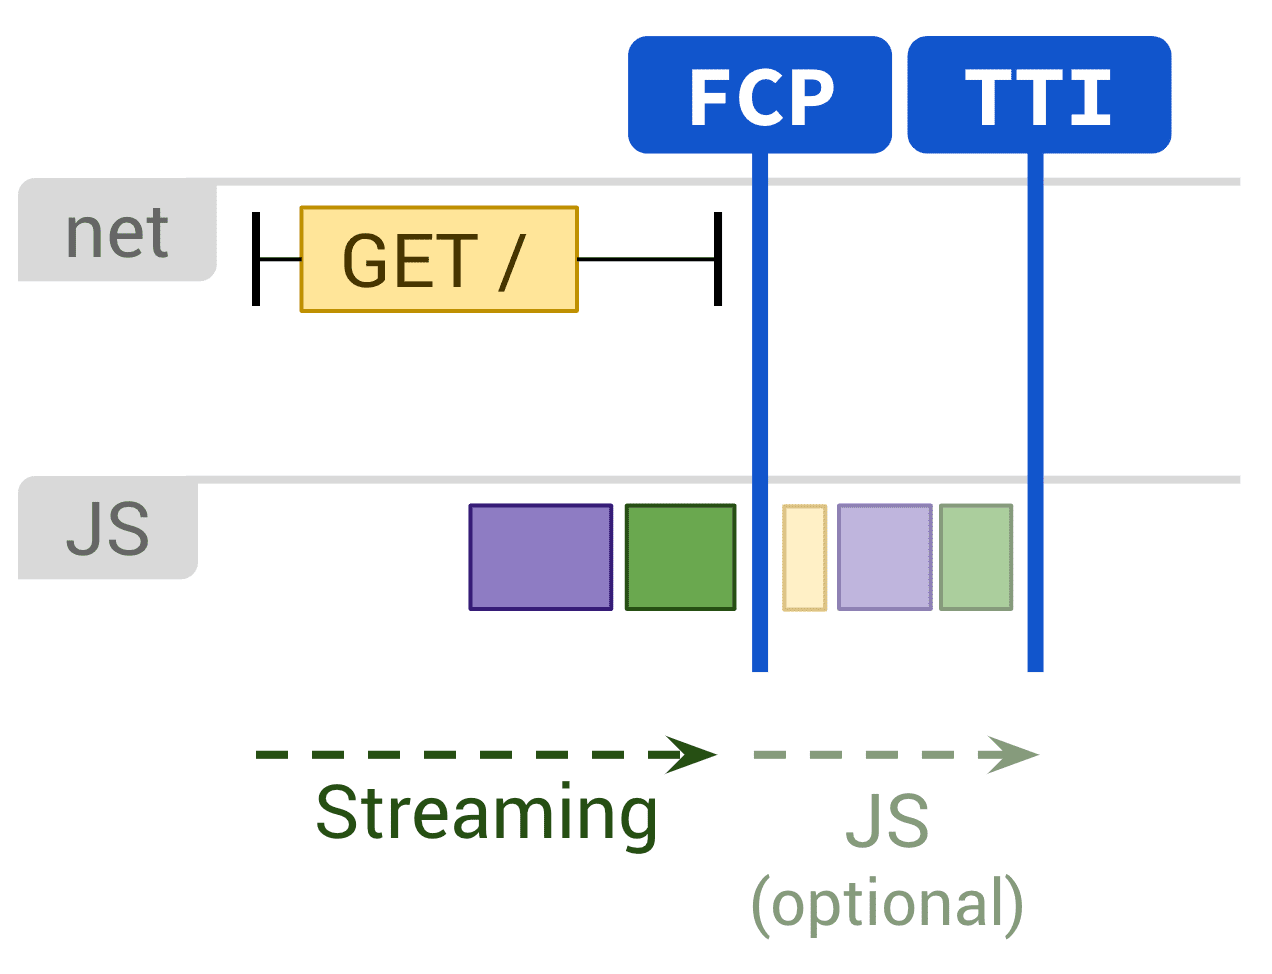 Диаграмма, показывающая статический рендеринг и дополнительное выполнение JS, влияющее на FCP и TTI.